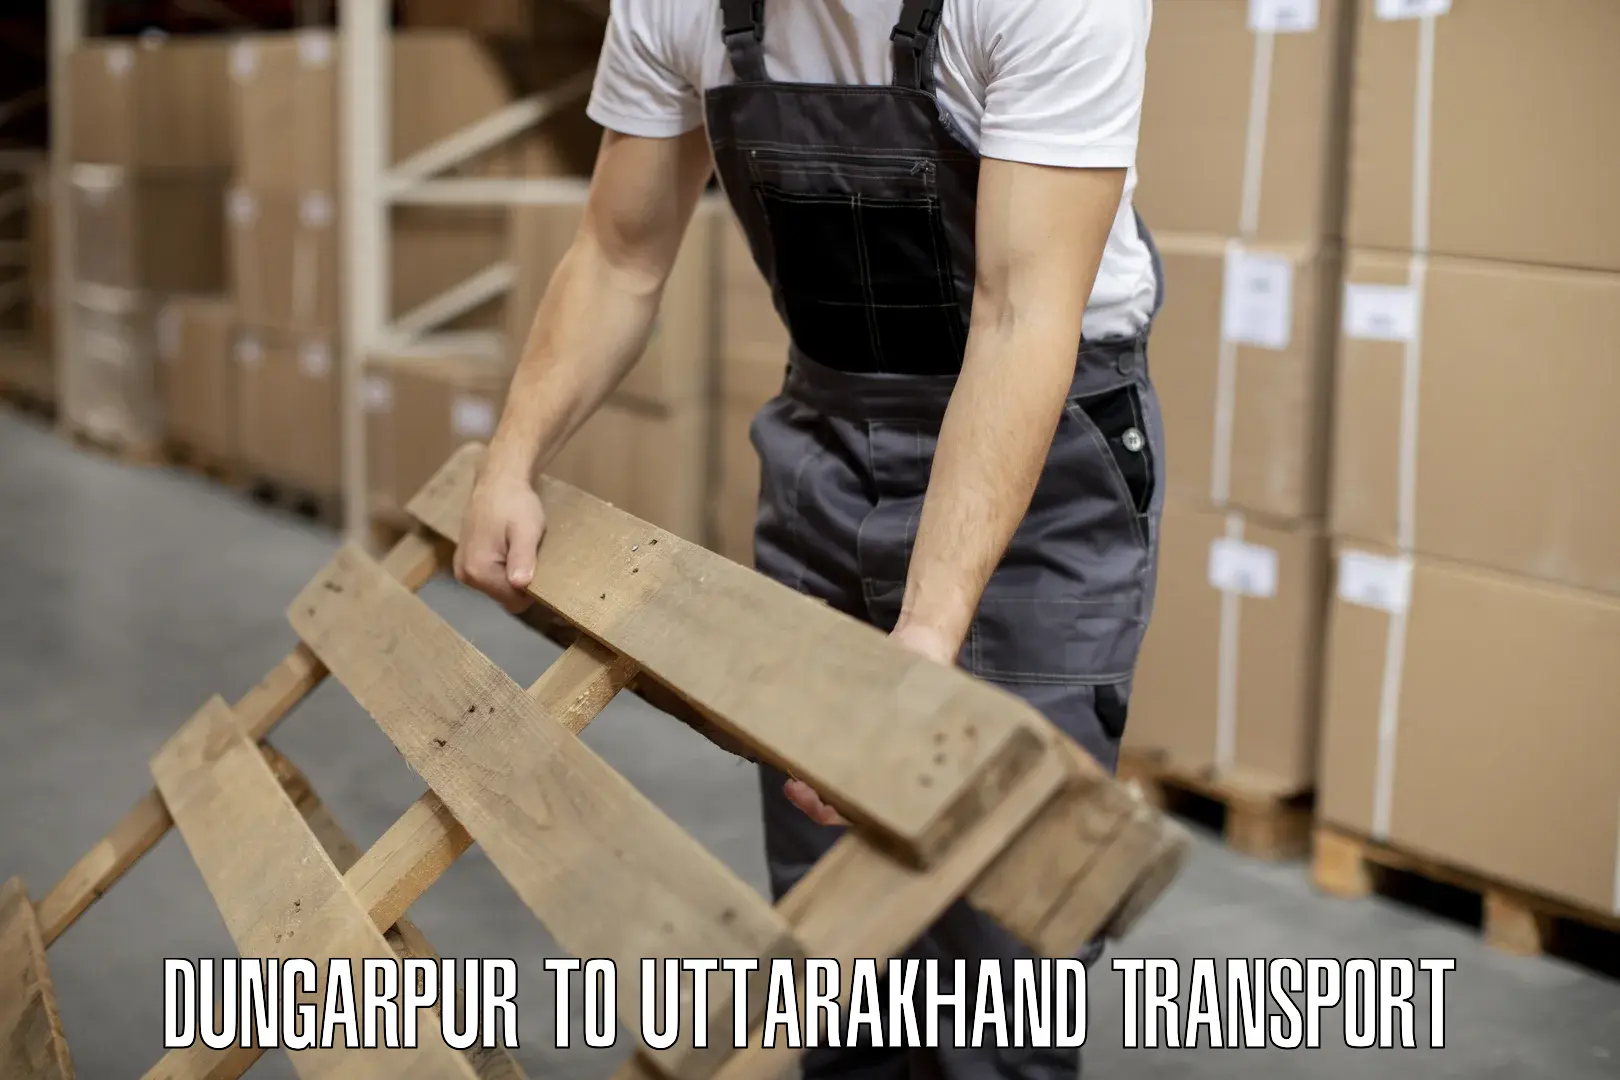 Furniture transport service Dungarpur to Haridwar